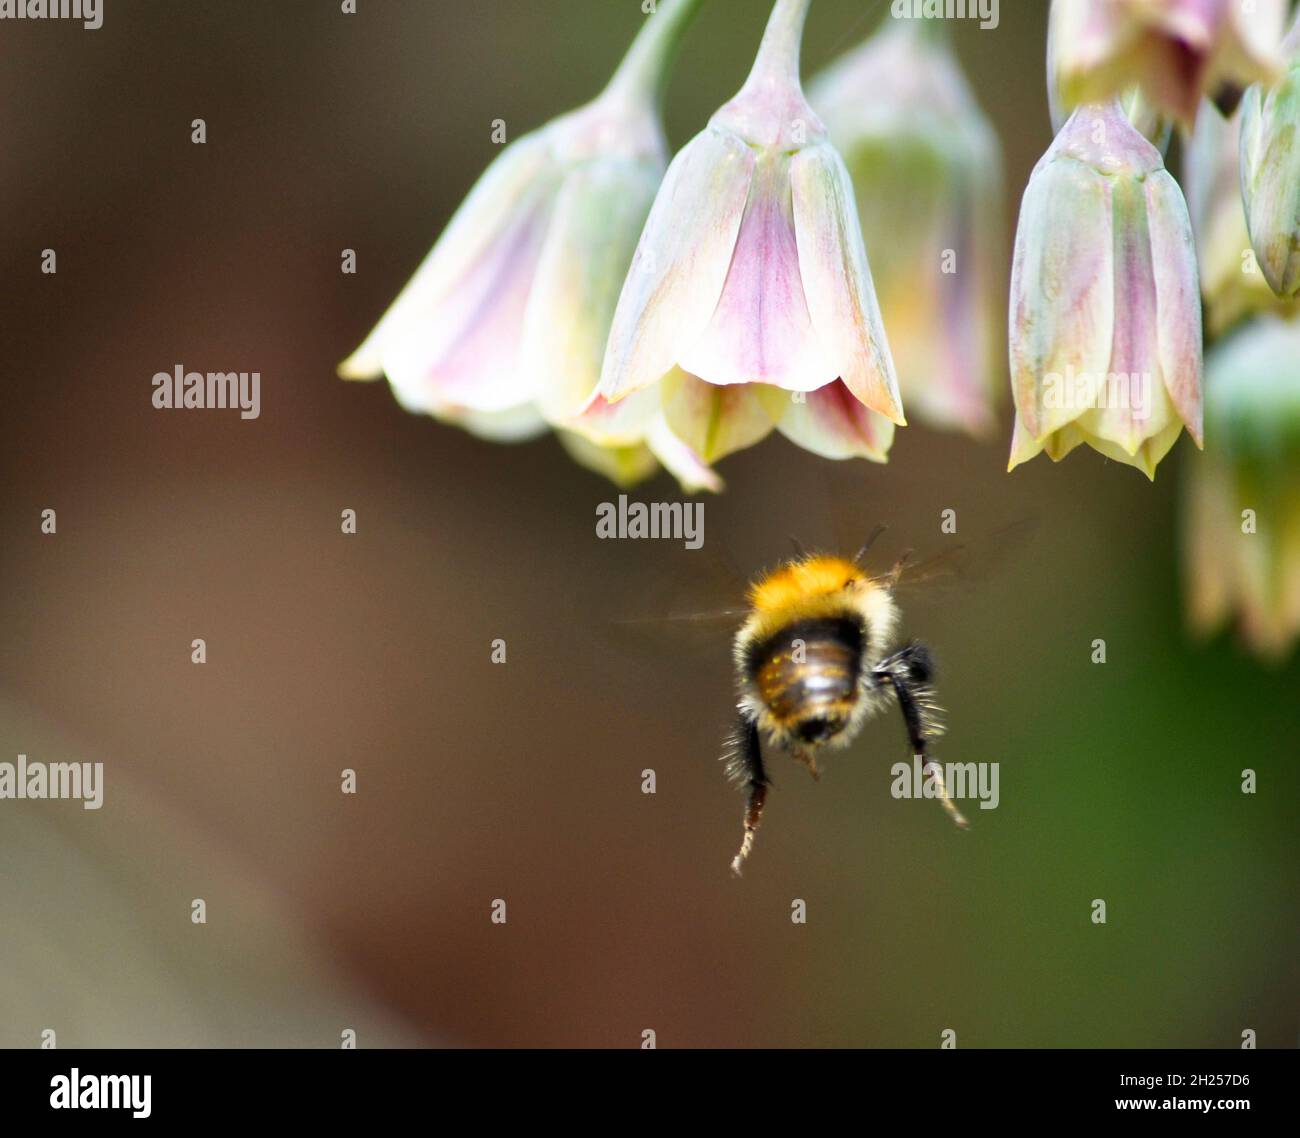 Hummel nähert sich einer Blume des sizilianischen Honigknoblauchs (Nectaroscordum siculum), die in einem englischen Landgarten liegt Stockfoto